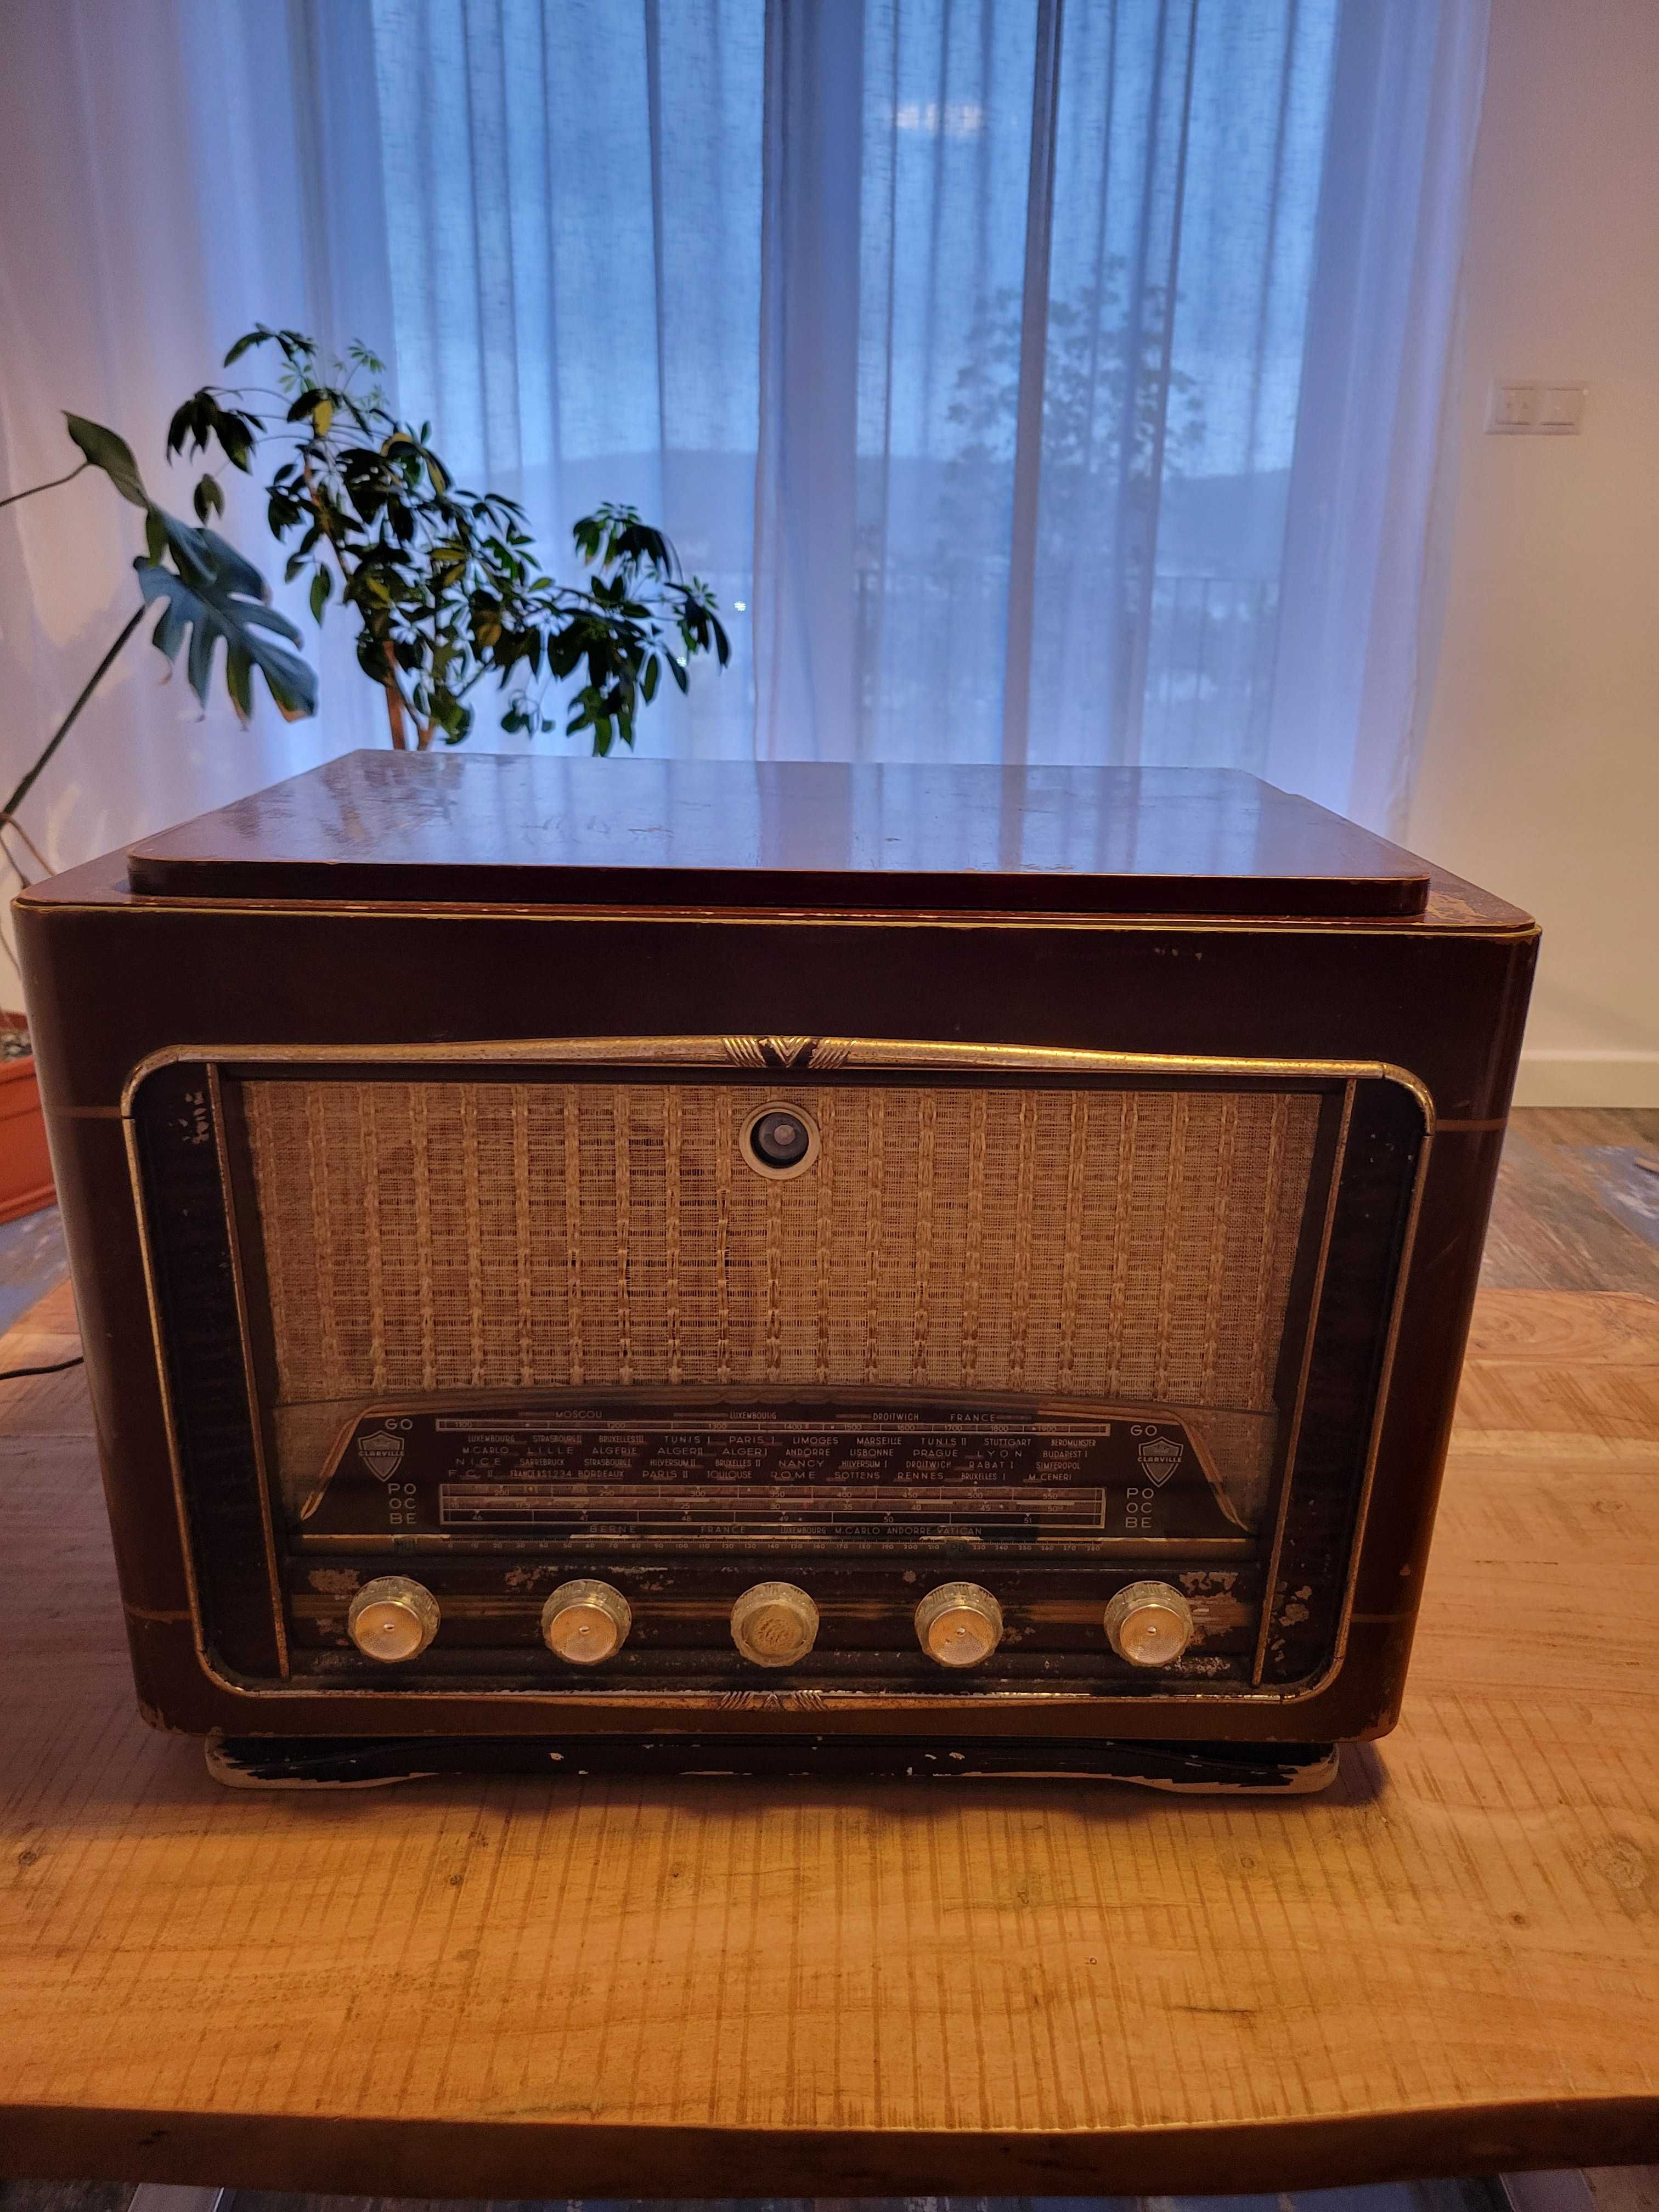 Radio Clareville 1953